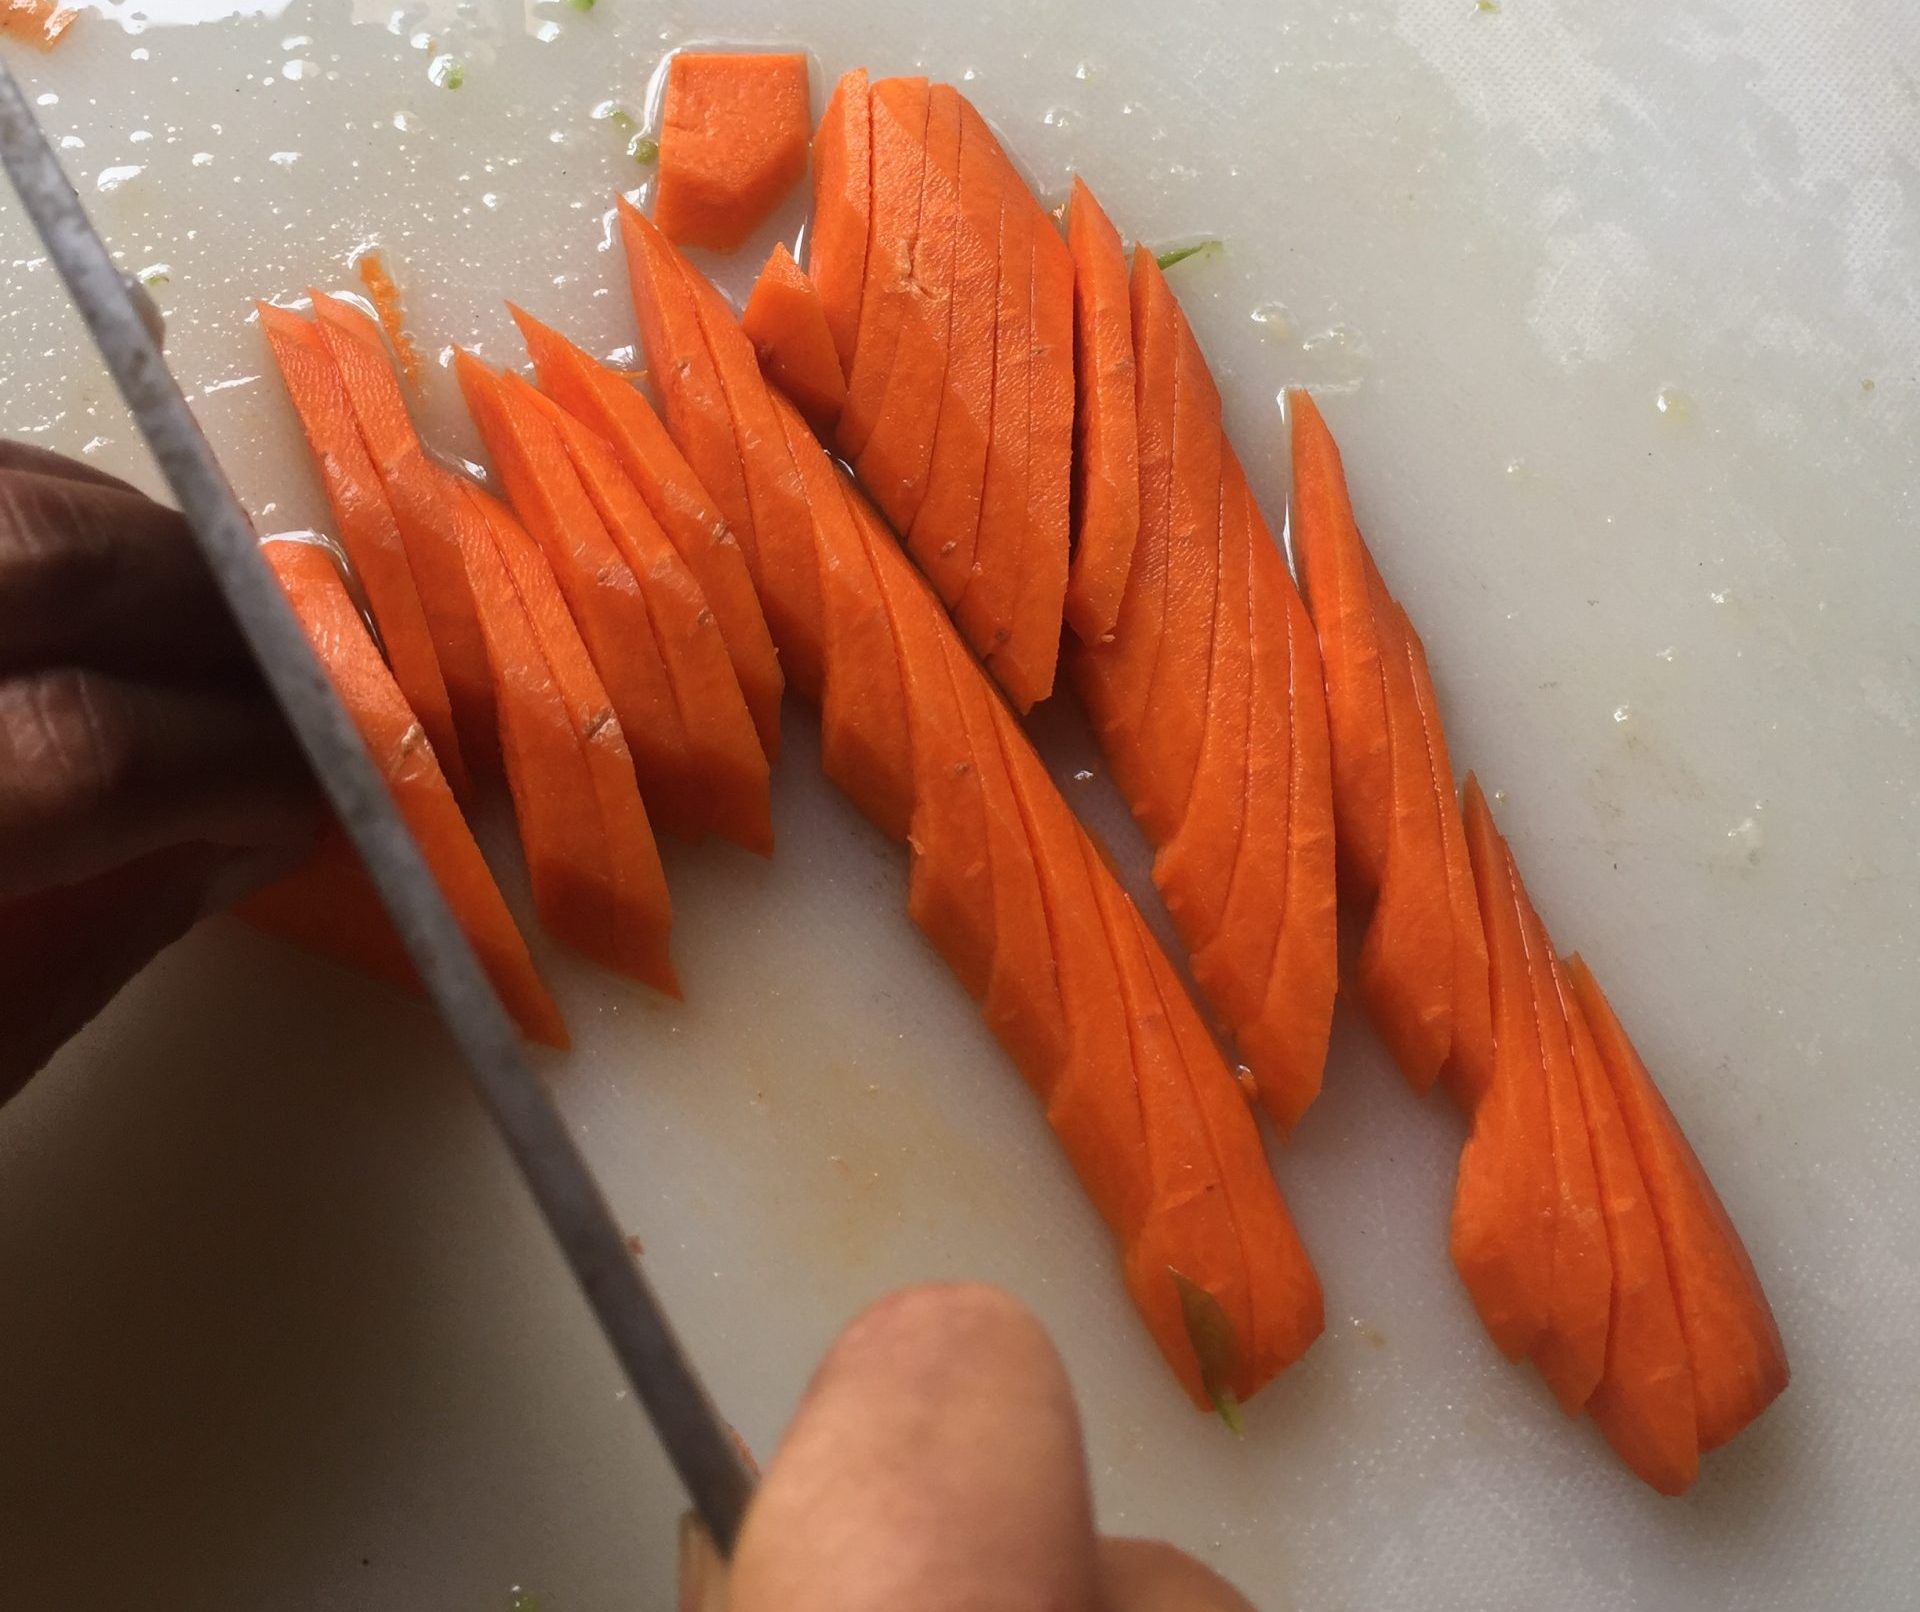 Uniformly cut carrots.